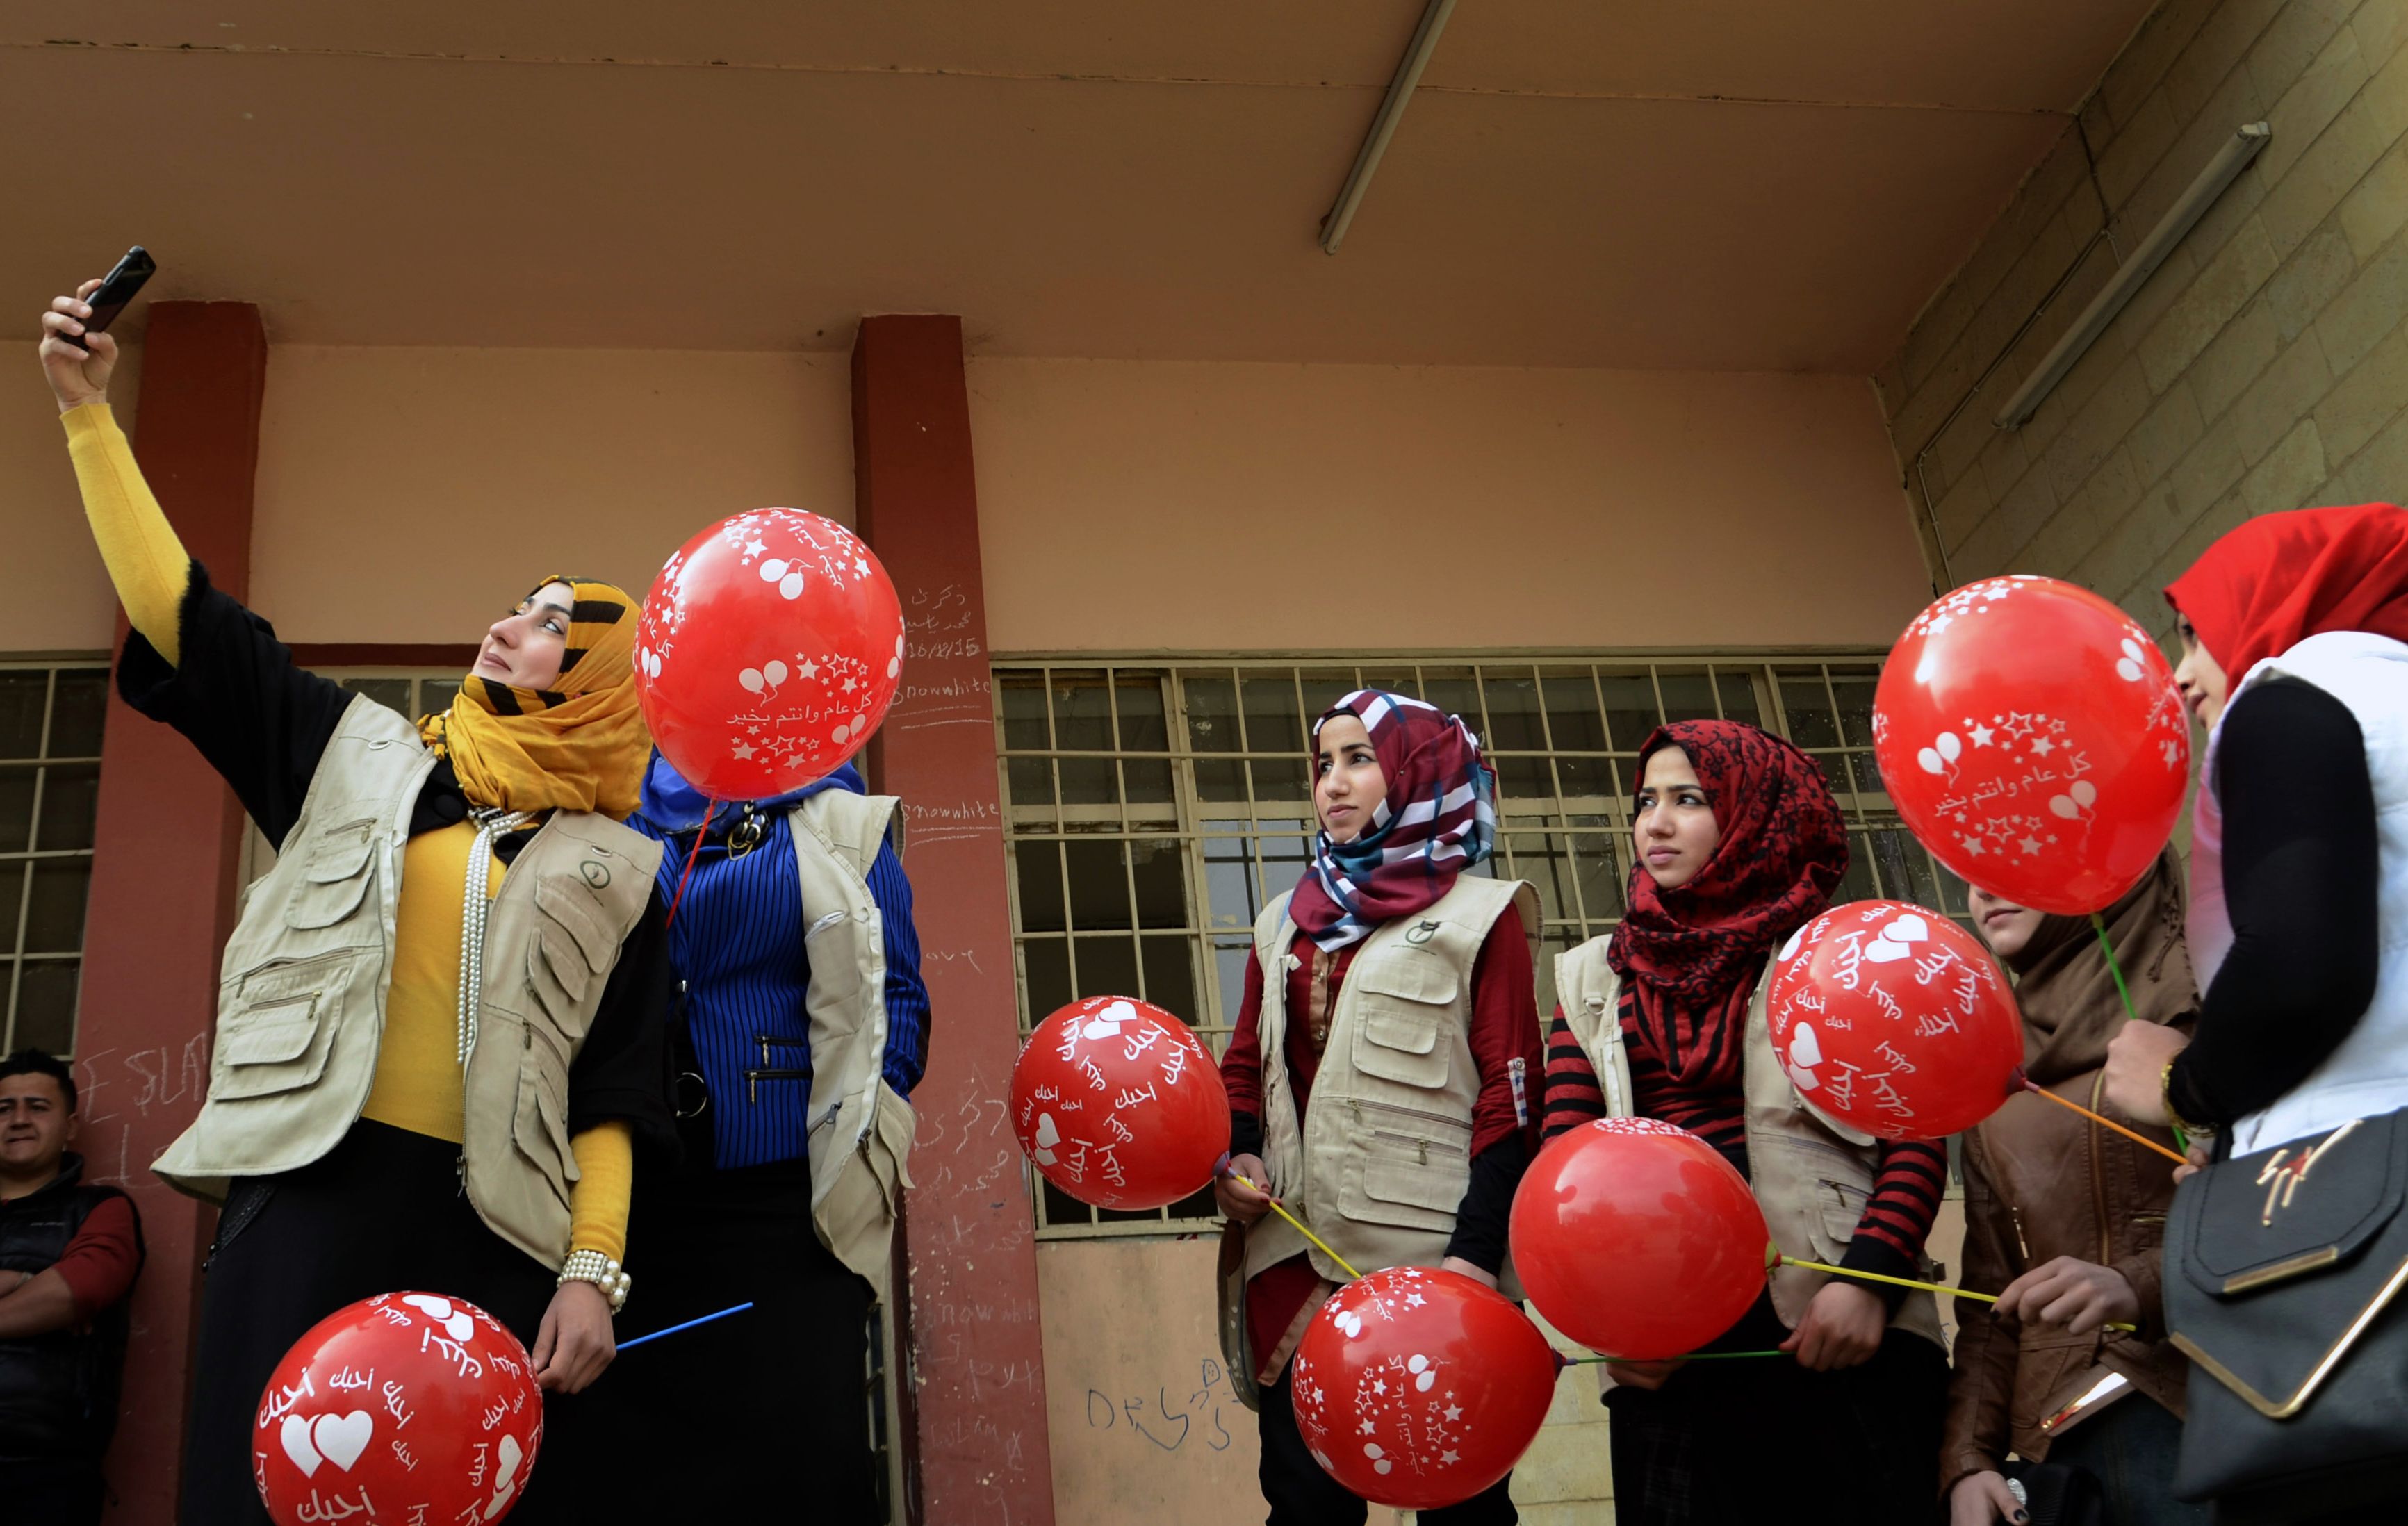 طلاب الموصل يحتفلون بـالفلانتين على طريقتهم الخاصة